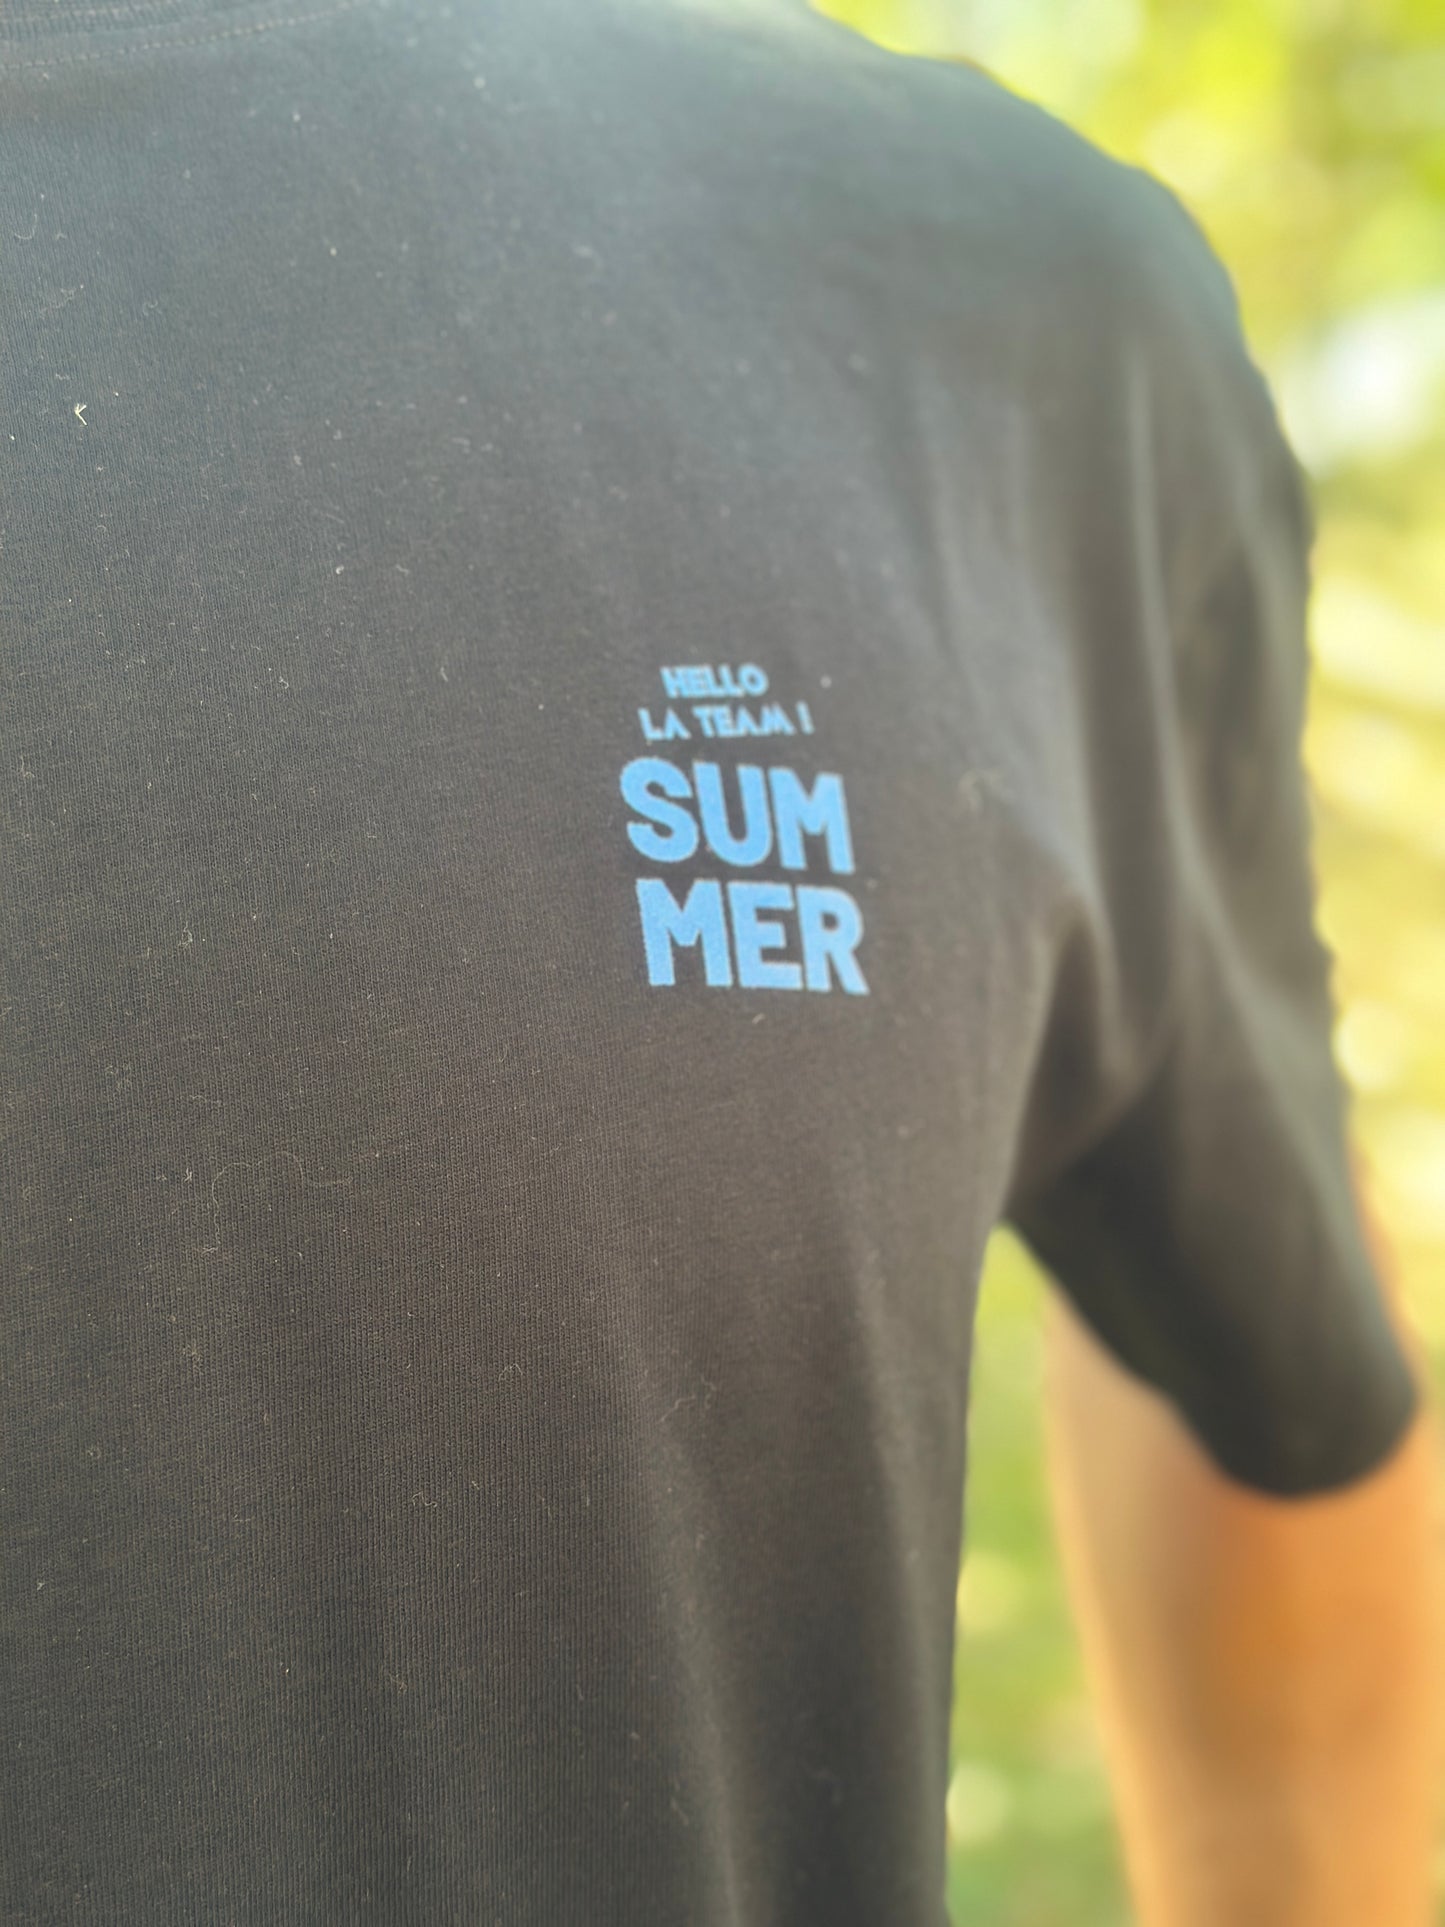 Tee-Shirt Over Size Noir SUMMER SUNSET